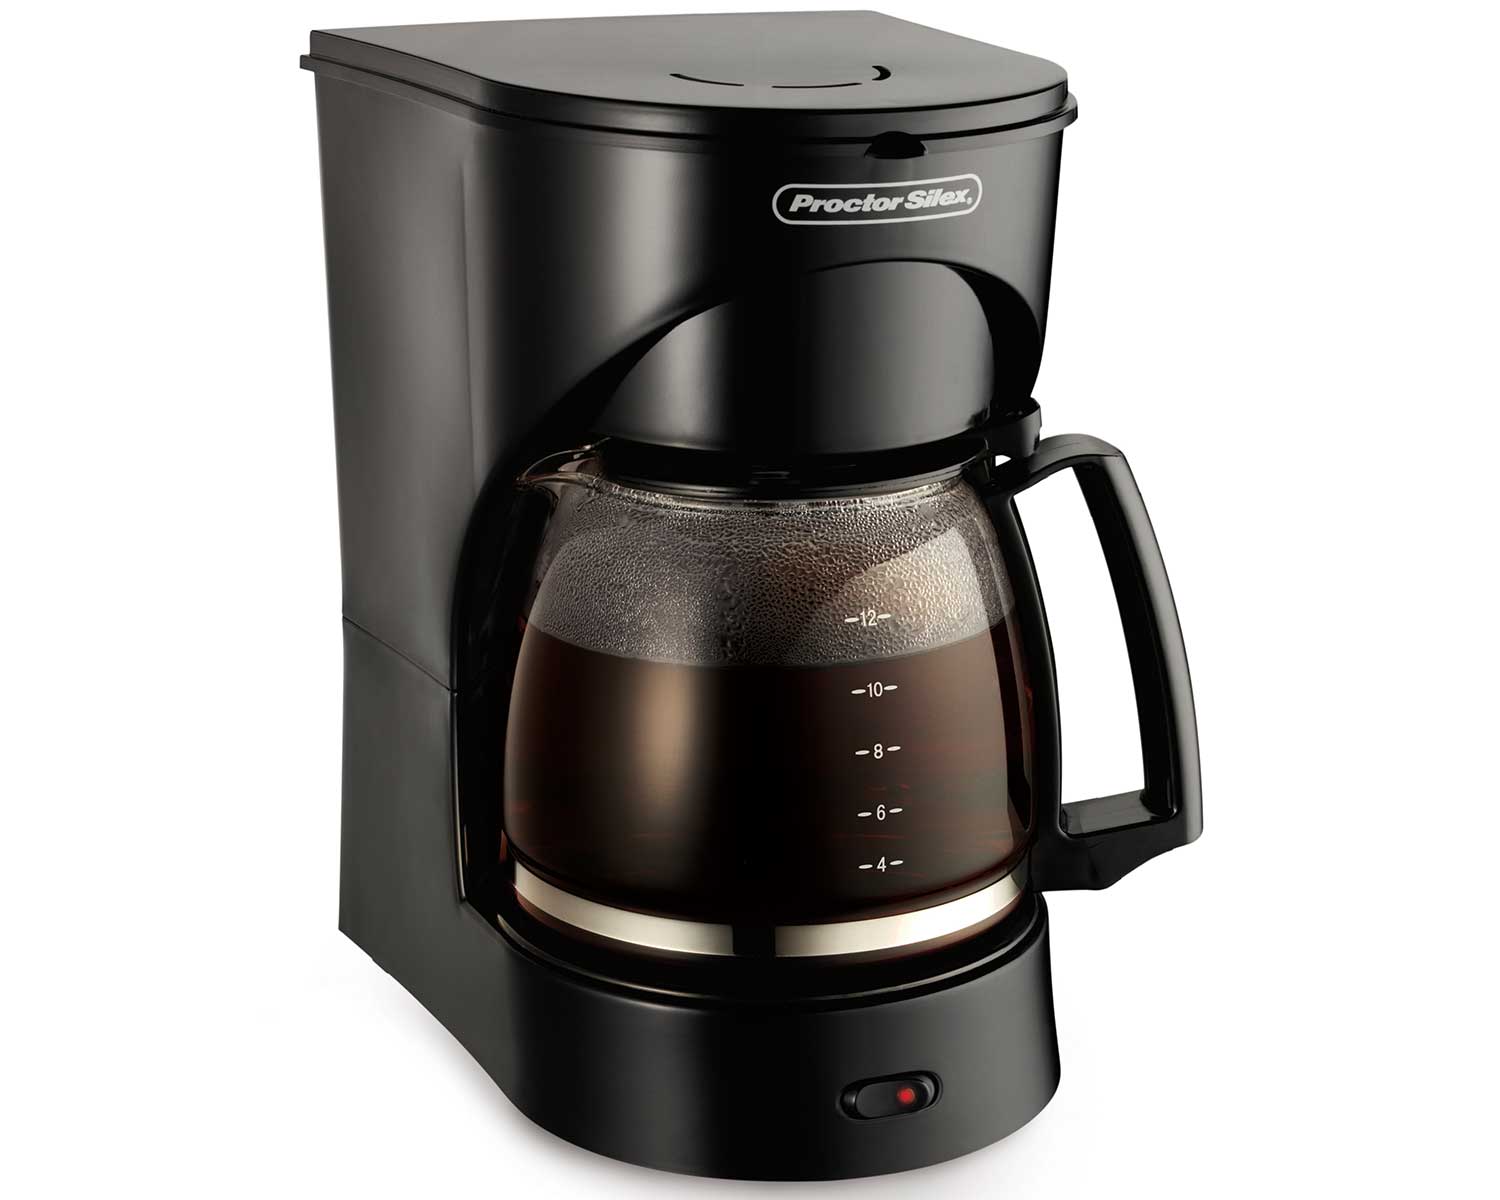 Proctor Silex 43501Y 12-Cup Coffeemaker - White